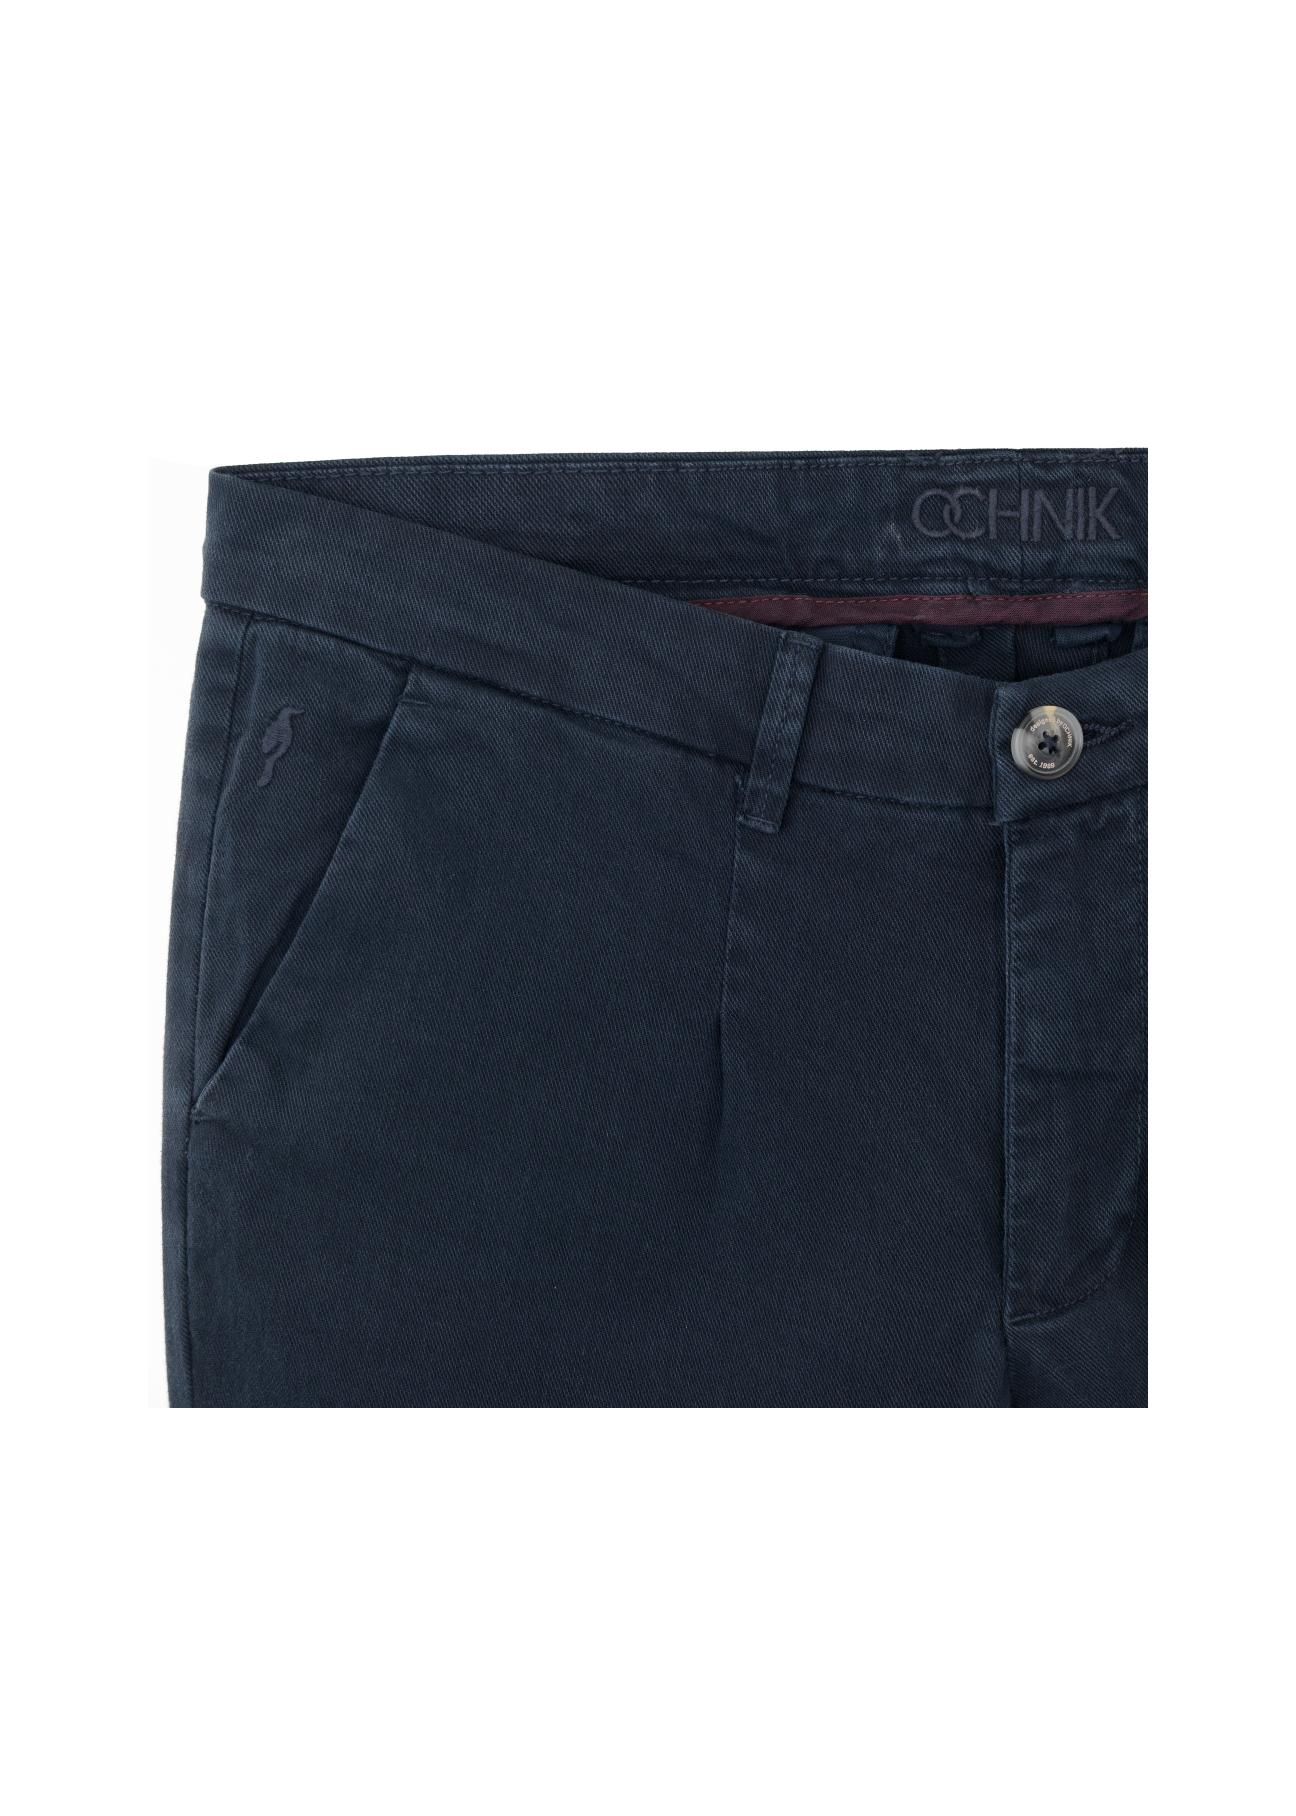 Spodnie męskie SPOMT-0057-69(Z20)